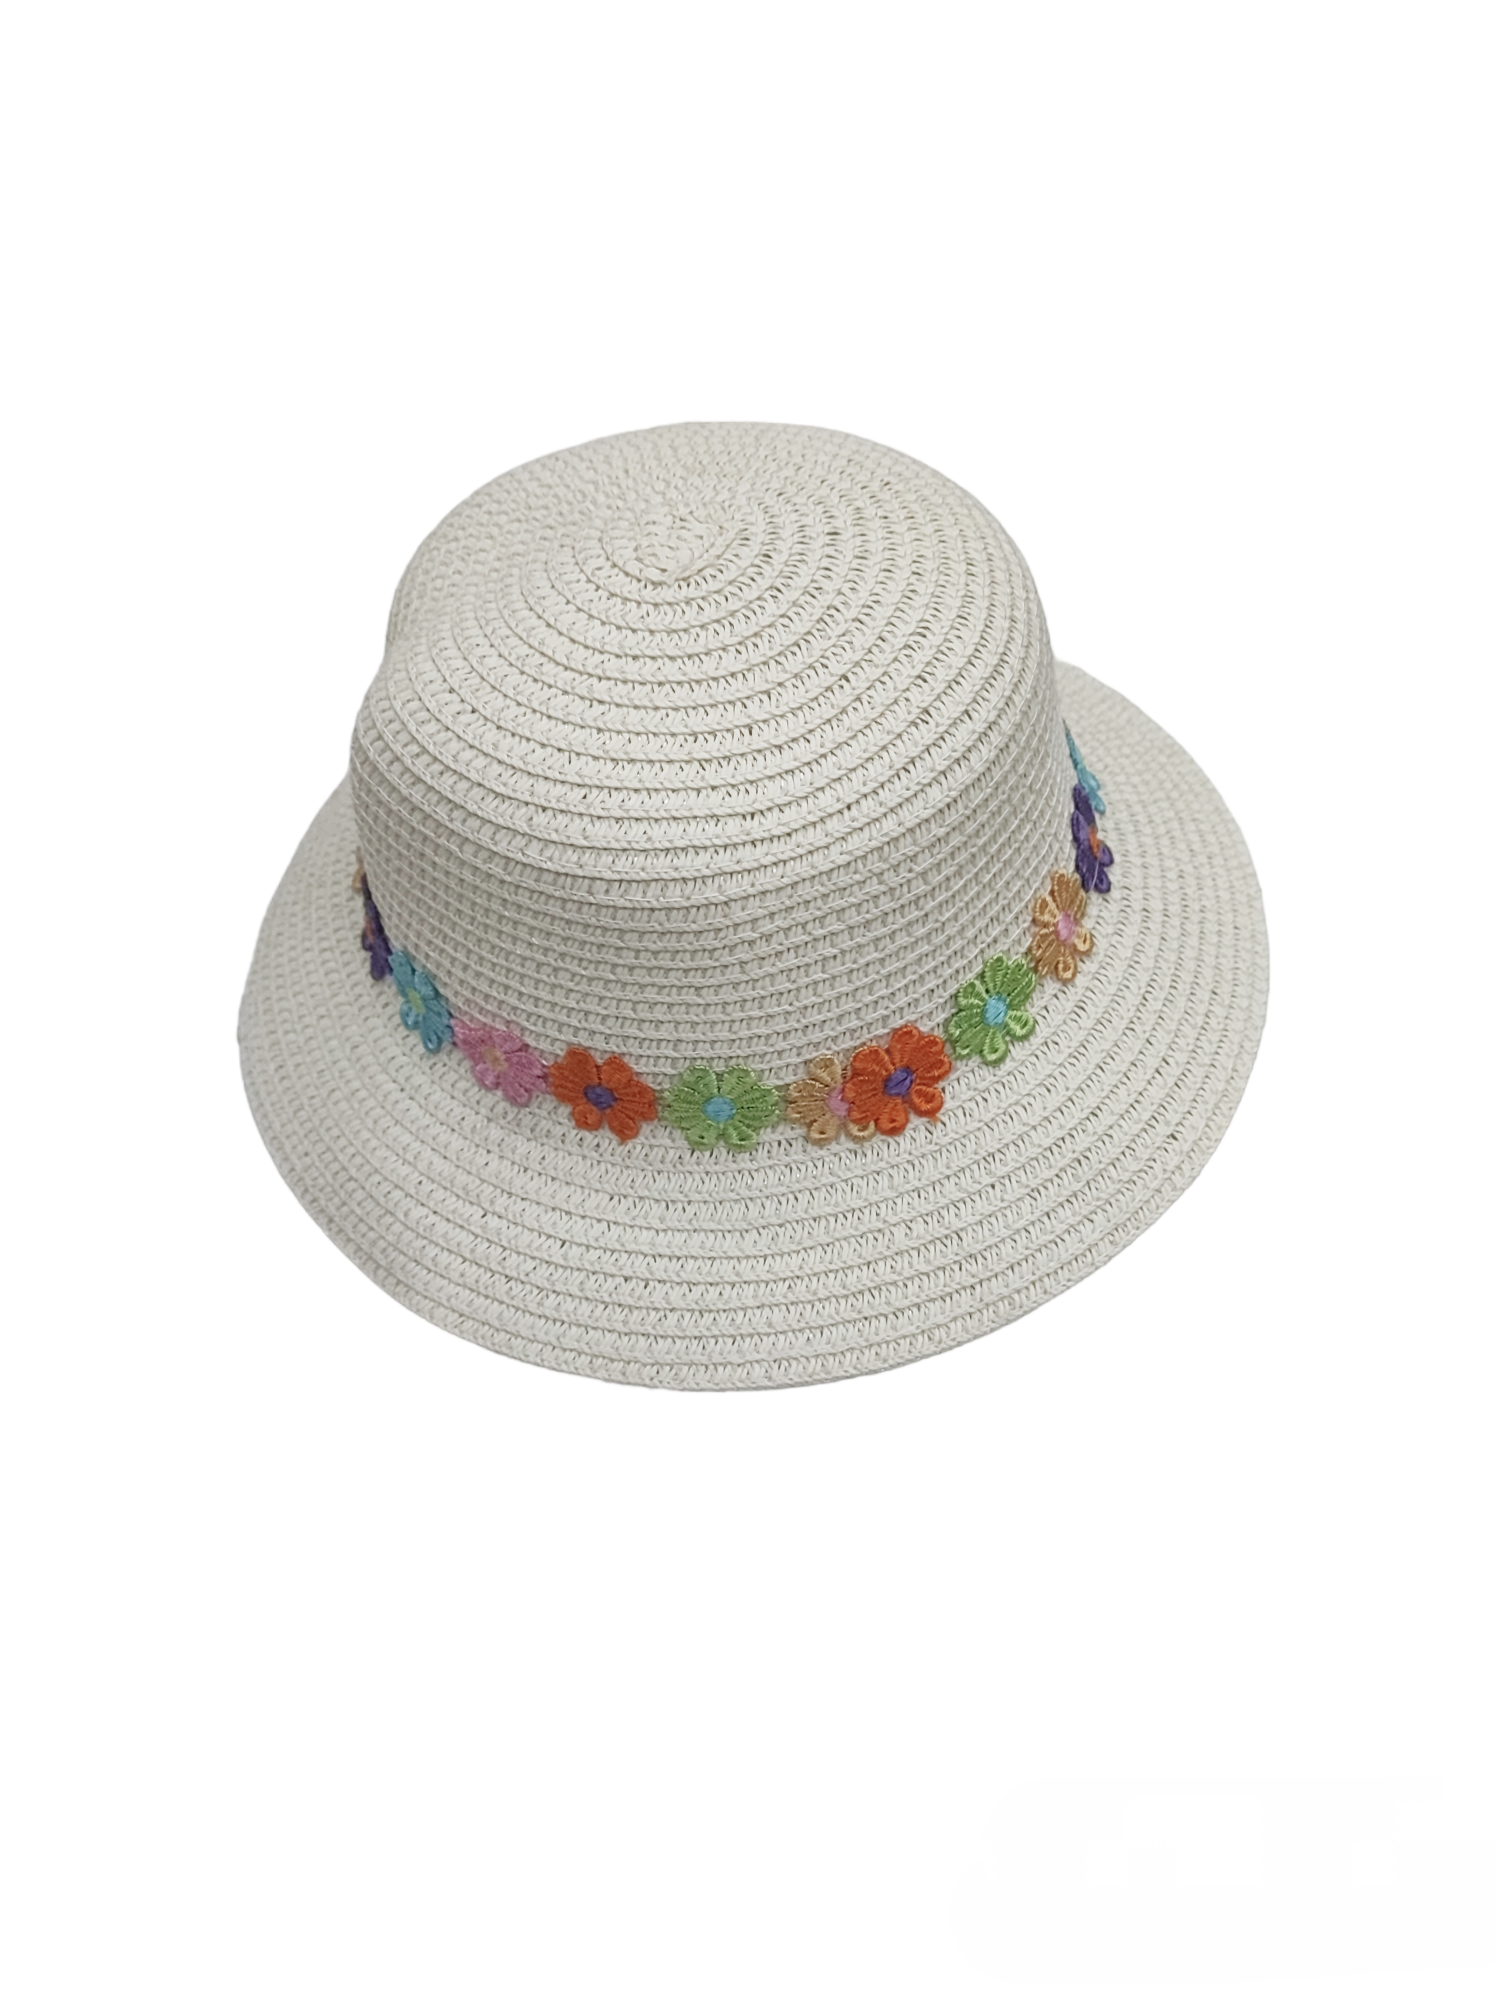 Chapeaux de paille taille enfant motif  petite fleur    (x12)